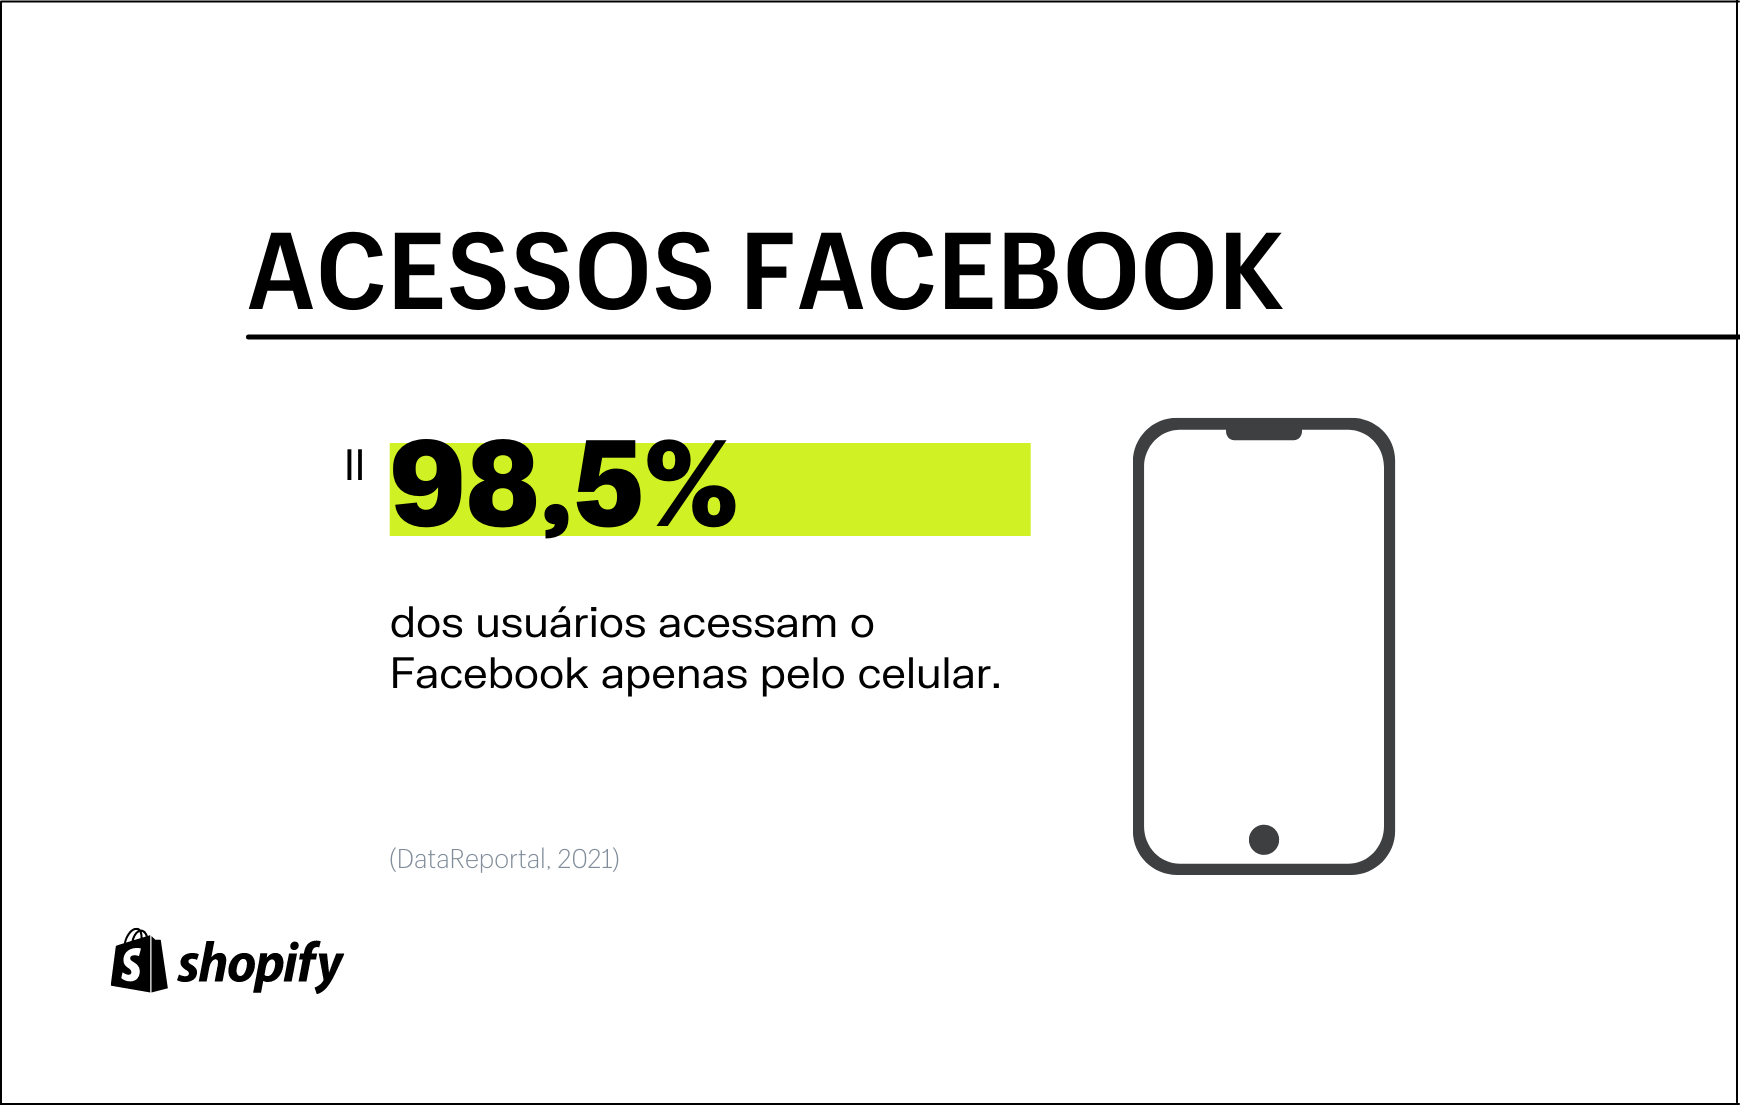 Infográfico com plano de fundo branco e dados em cor preta e detalhes verdes, no qual há a informação de que 98,5% dos usuários usam o Facebook no smartphone